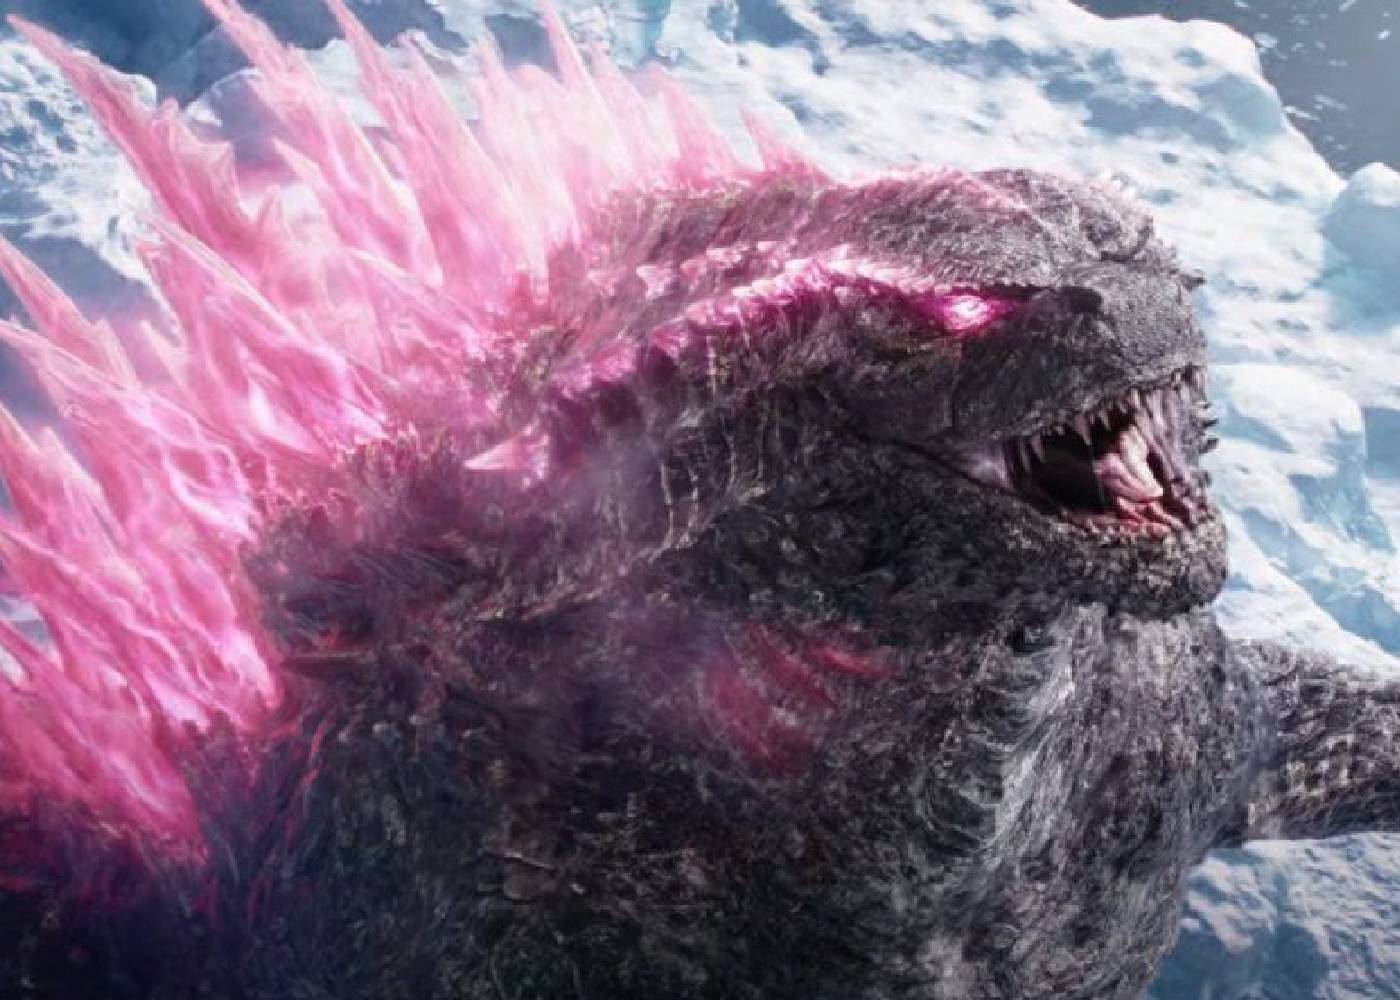 Catatan Sutradara tentang Kematian Godzilla!